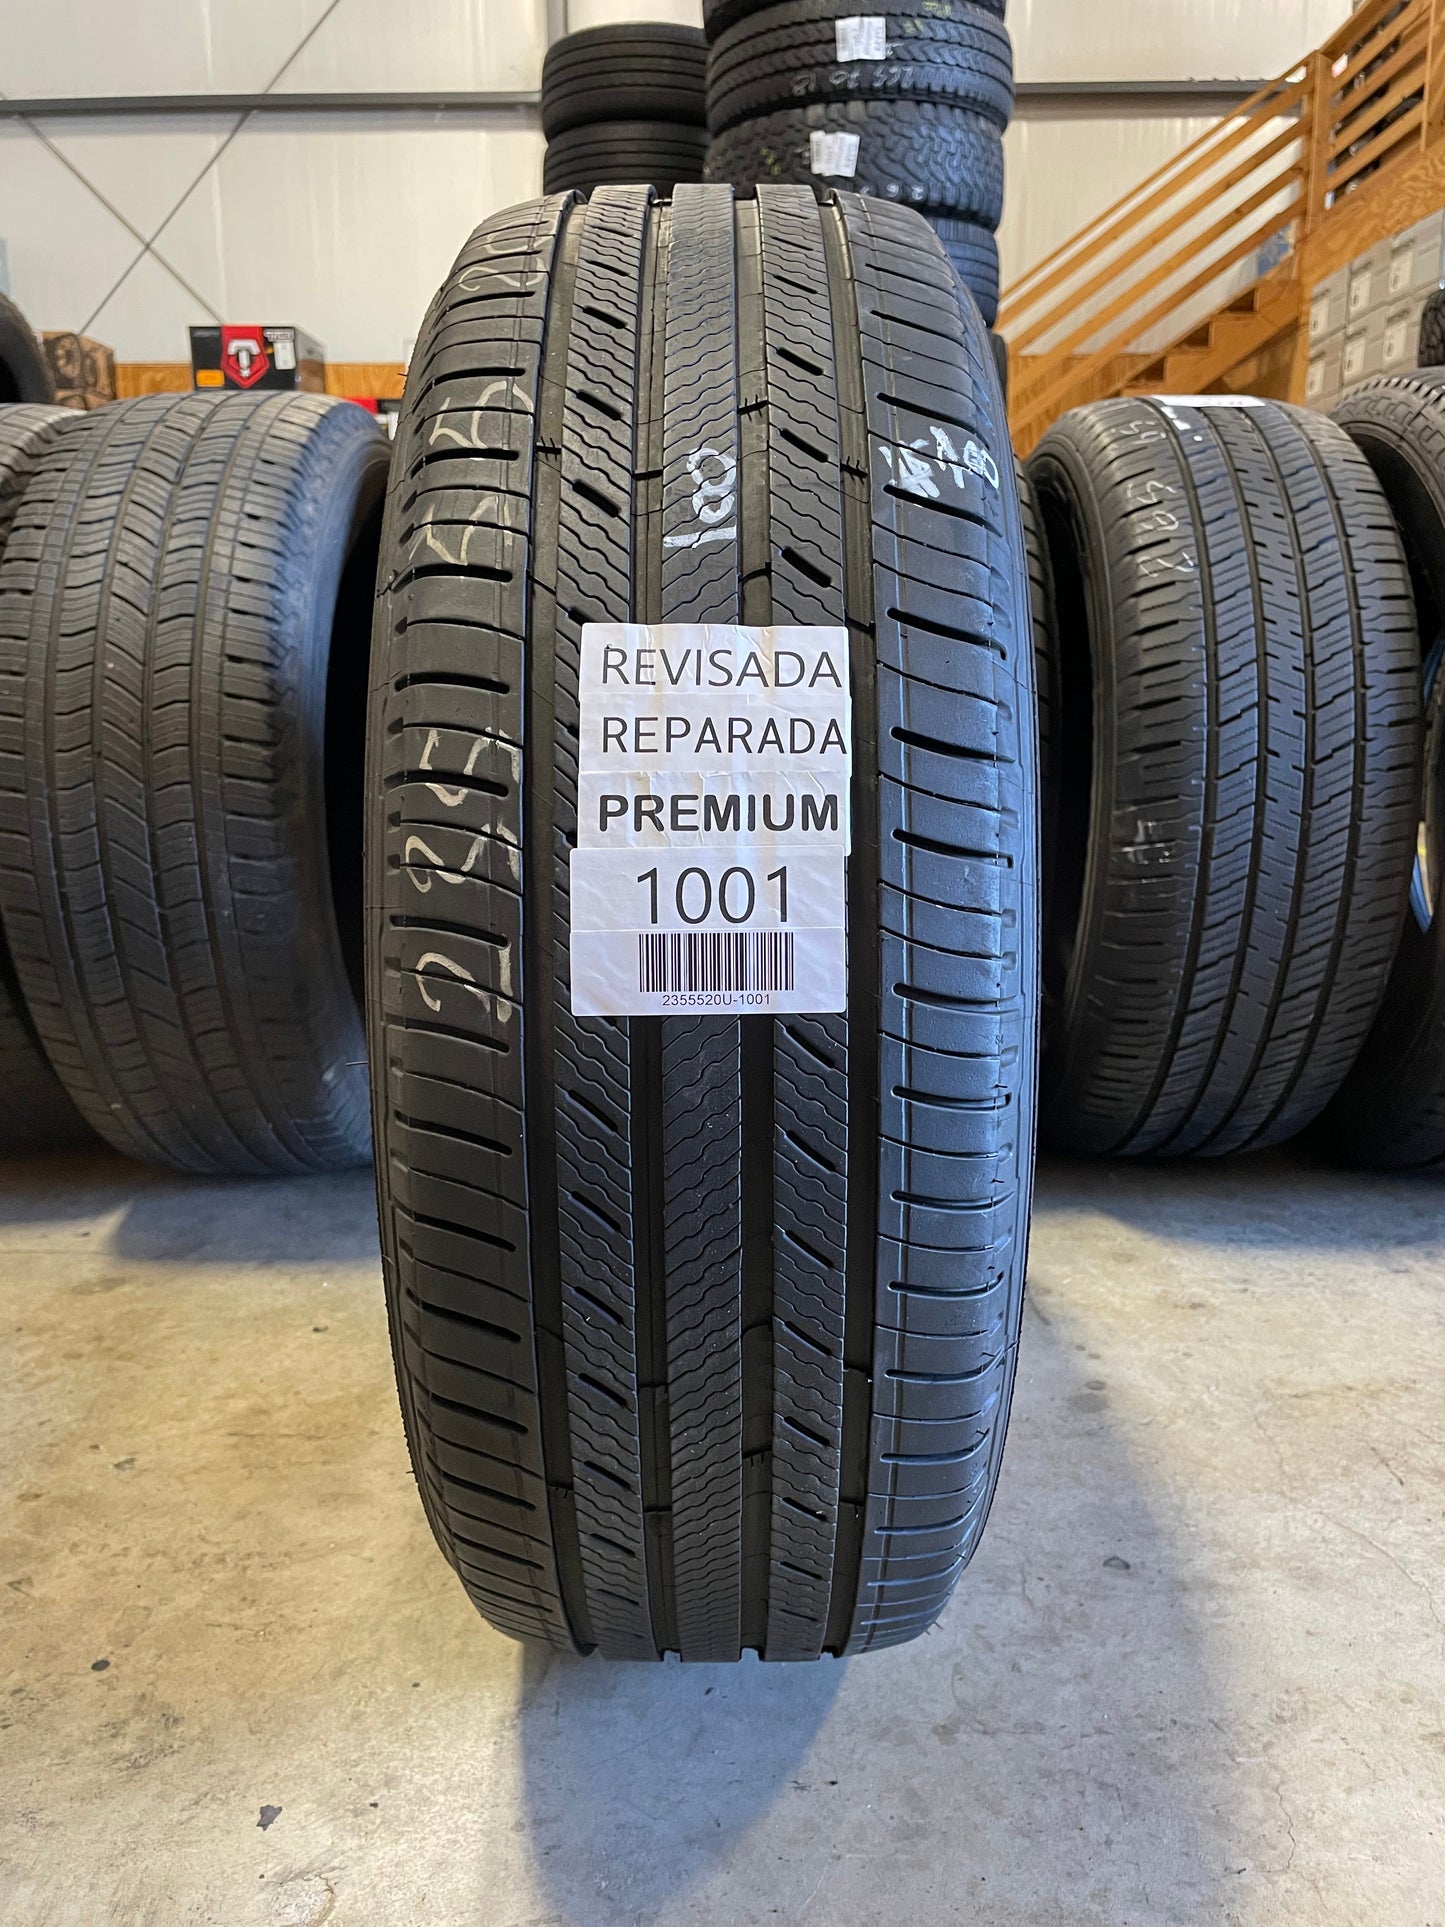 SINGLE 235/55R20 Michelin Premier LTX 102 SL - Premium Used Tires